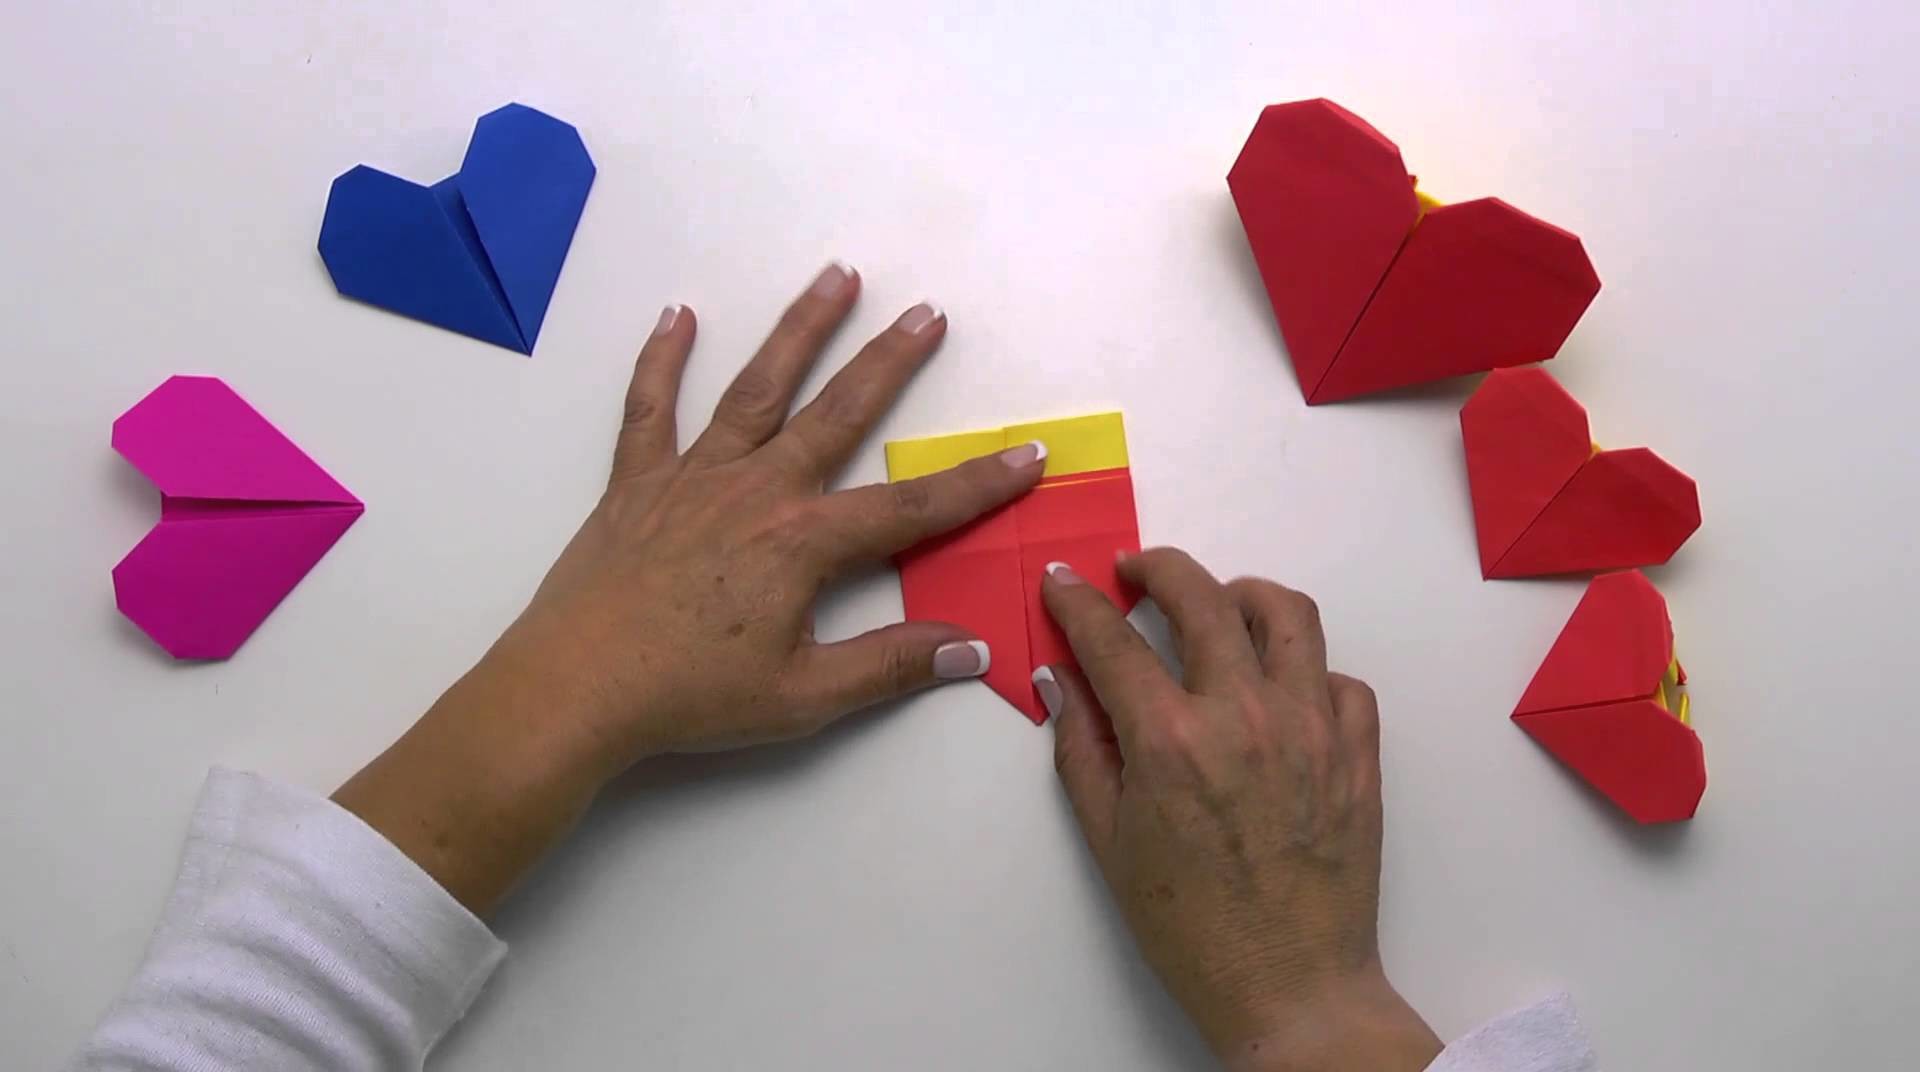 Arte con papel - Videocápsula 4 - Corazón de origami